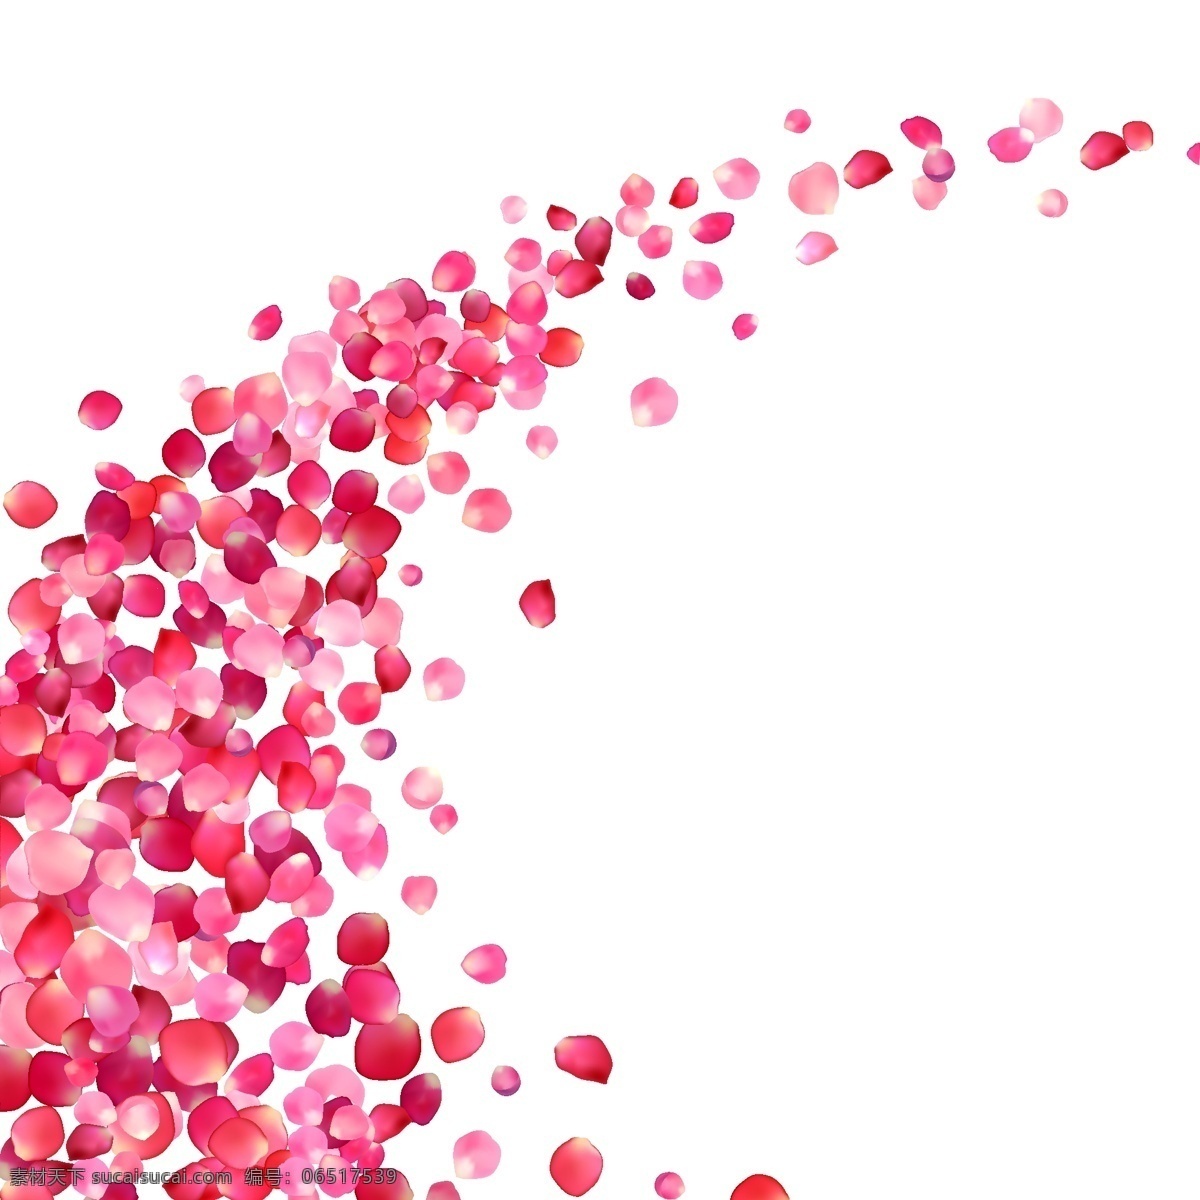 粉色 玫瑰 花瓣 弧形 边框 矢量 海报 设计素材 花桥 手绘 卡通 水彩 插画 创意 婚礼 爱情 装饰